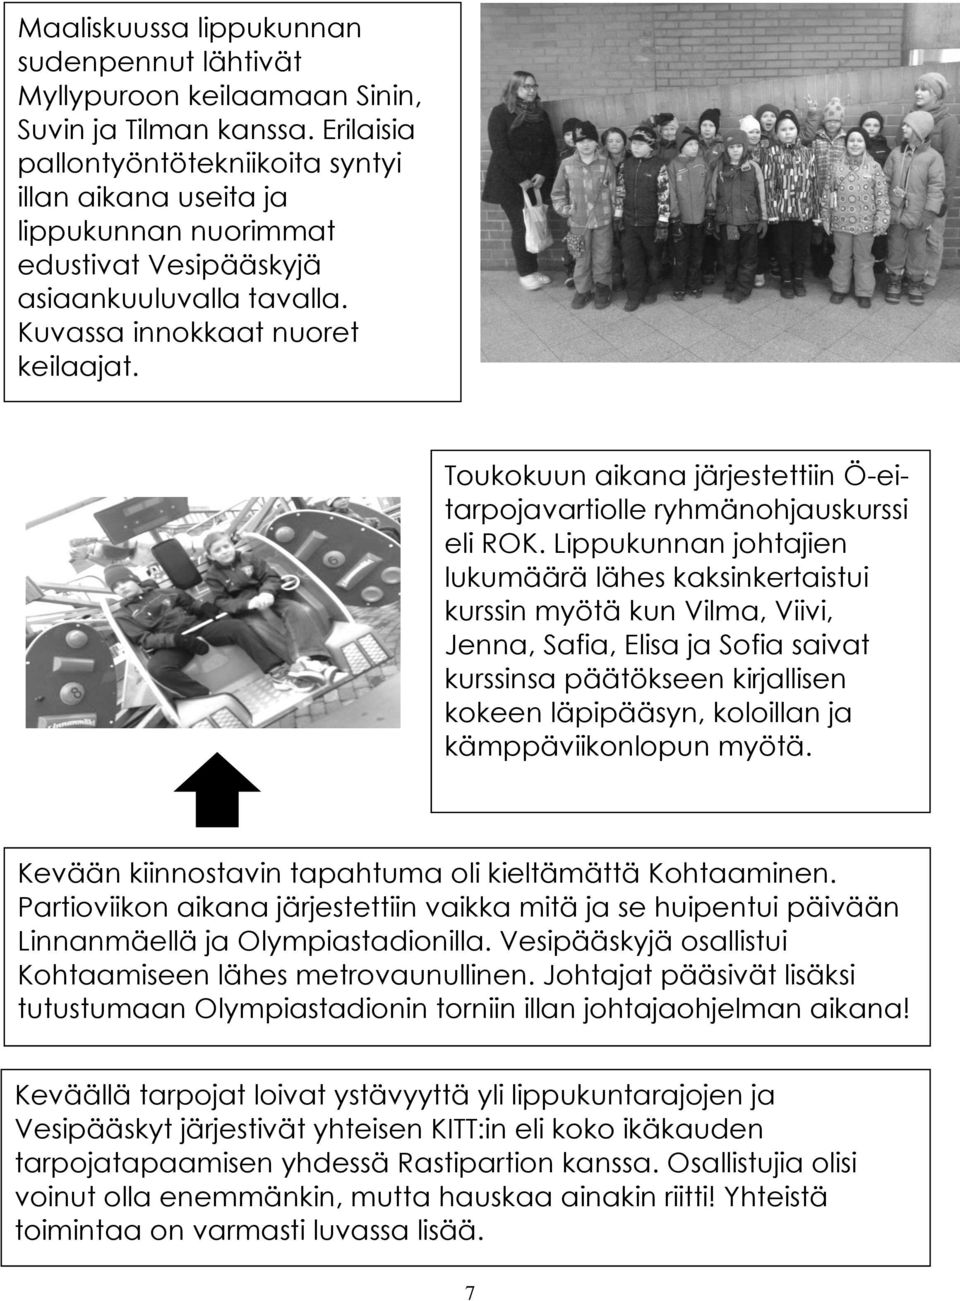 Toukokuun aikana järjestettiin Ö-eitarpojavartiolle ryhmänohjauskurssi eli ROK.